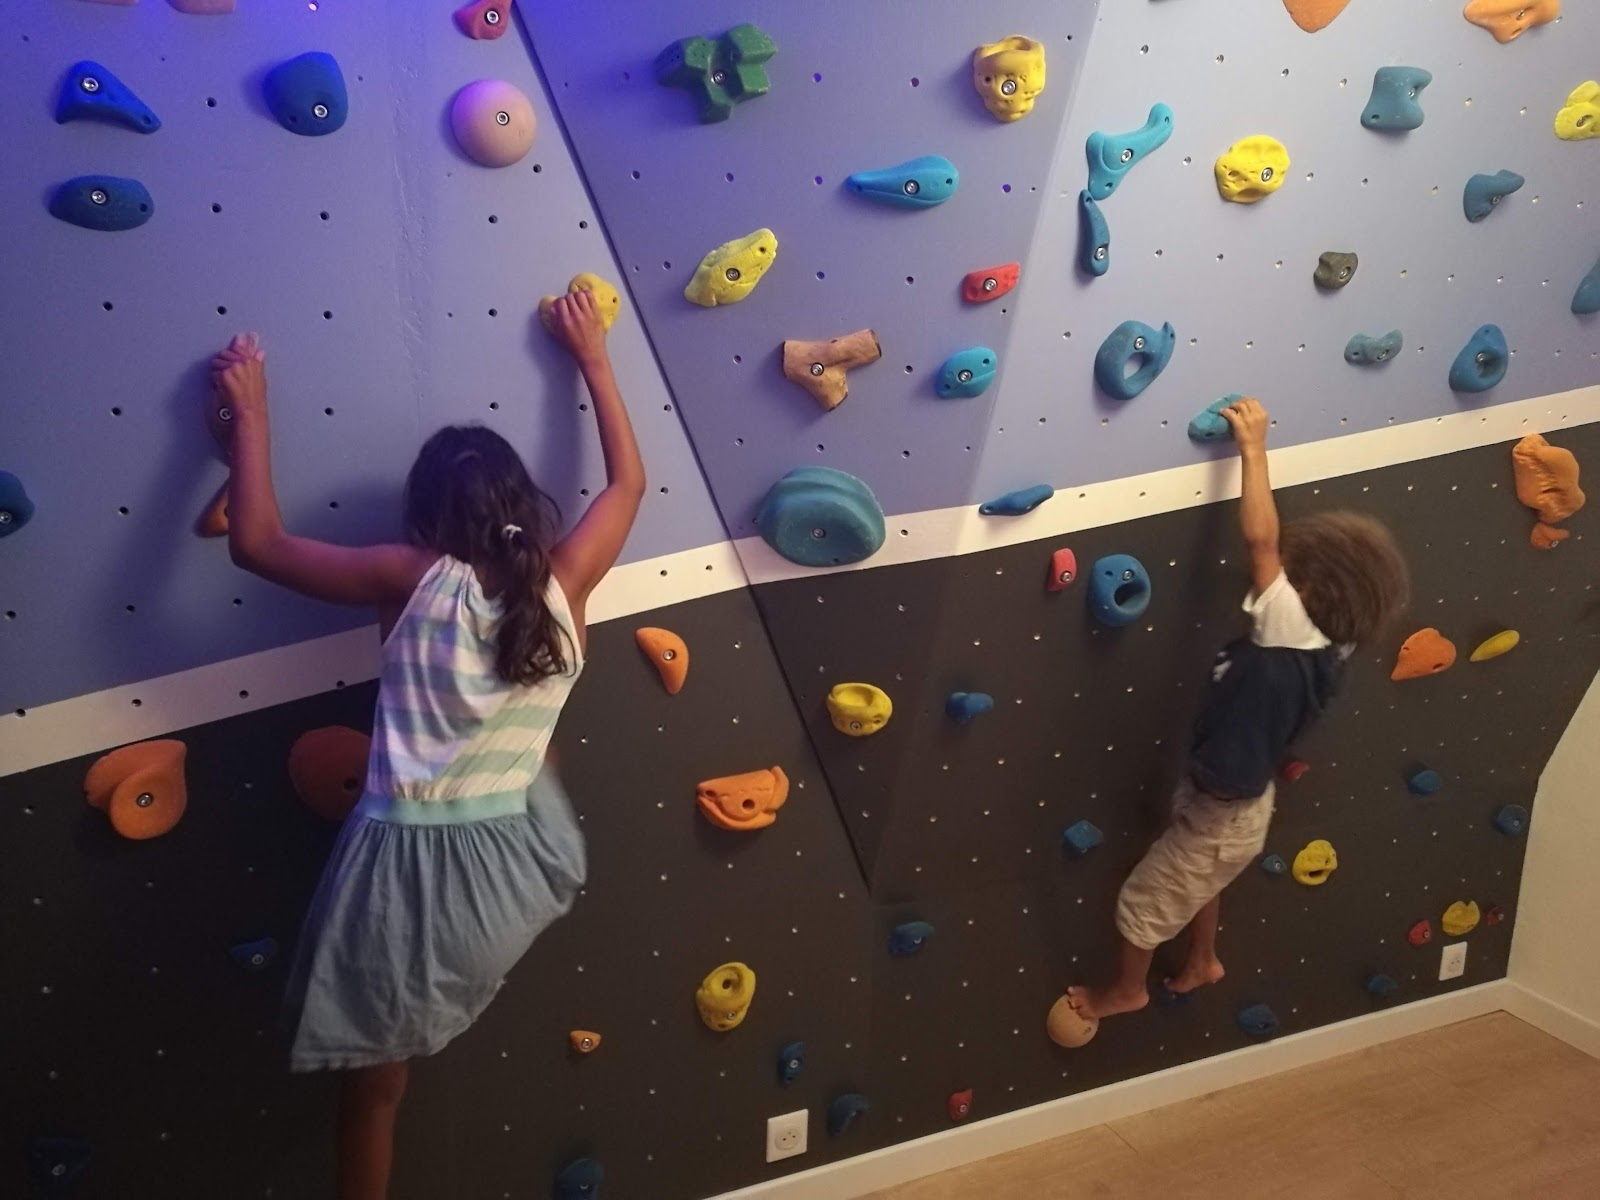 Installer un mur d'escalade pour enfants: facile et pas cher et sûr! 